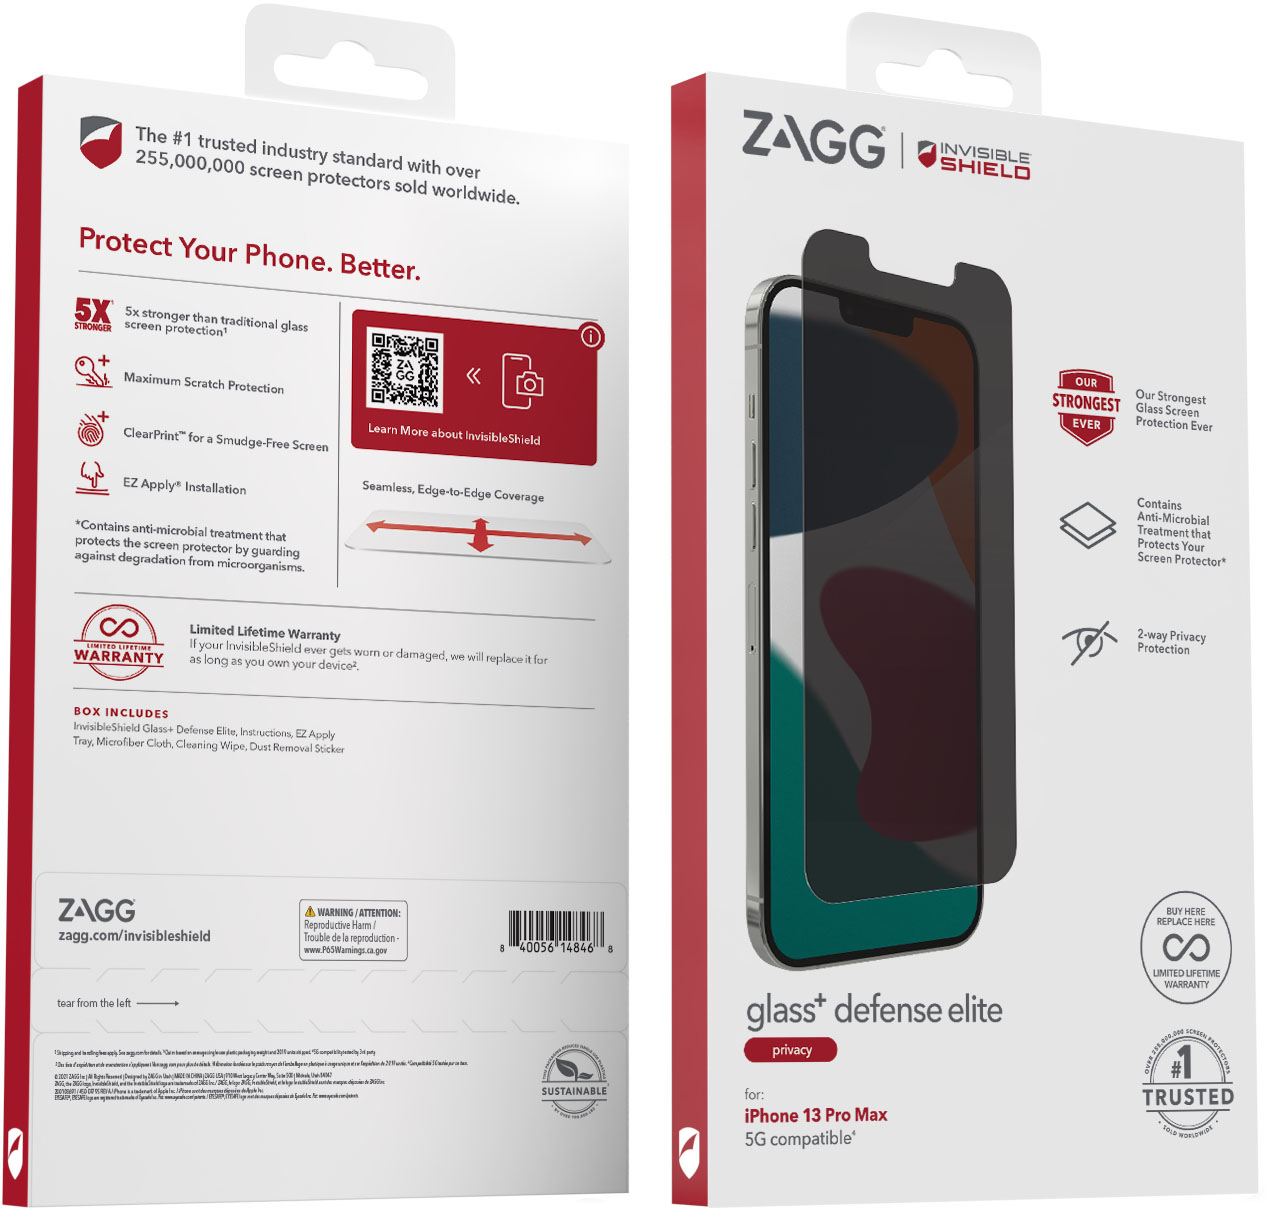 ZAGG InvisibleShield Glass Elite Privacy Maximum Impact & Privacy